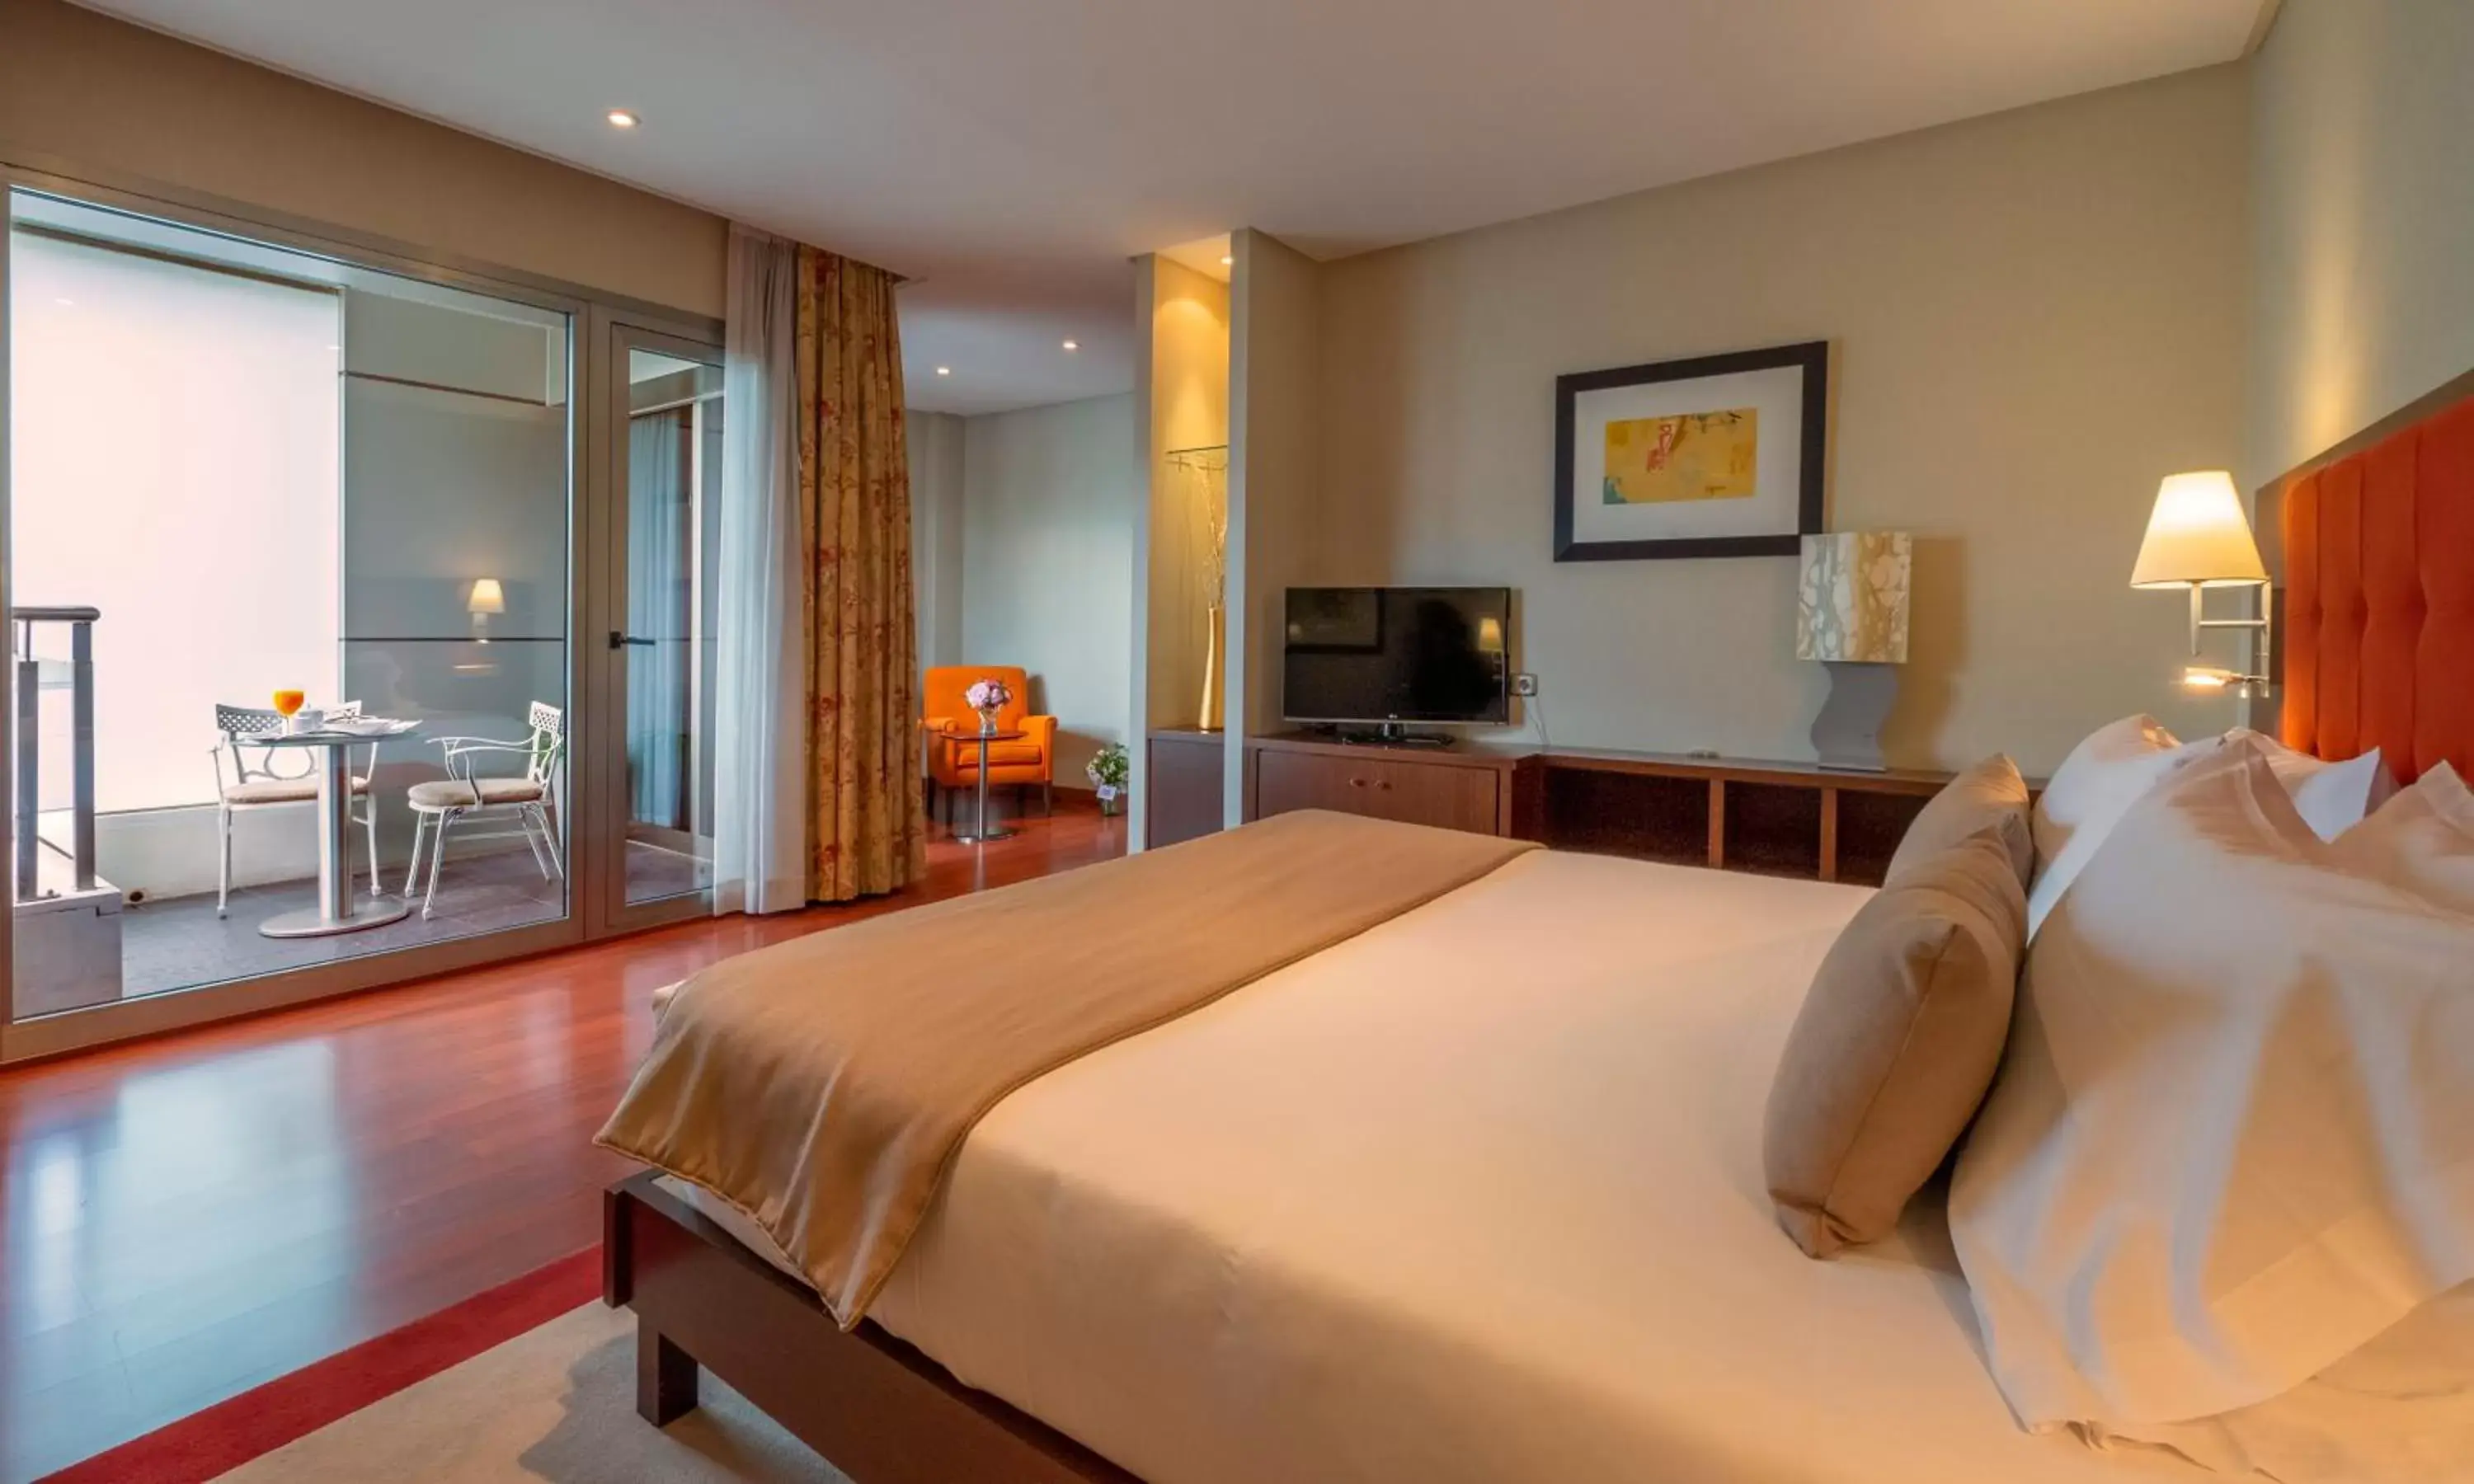 Bed in Gran Hotel Attica21 Las Rozas